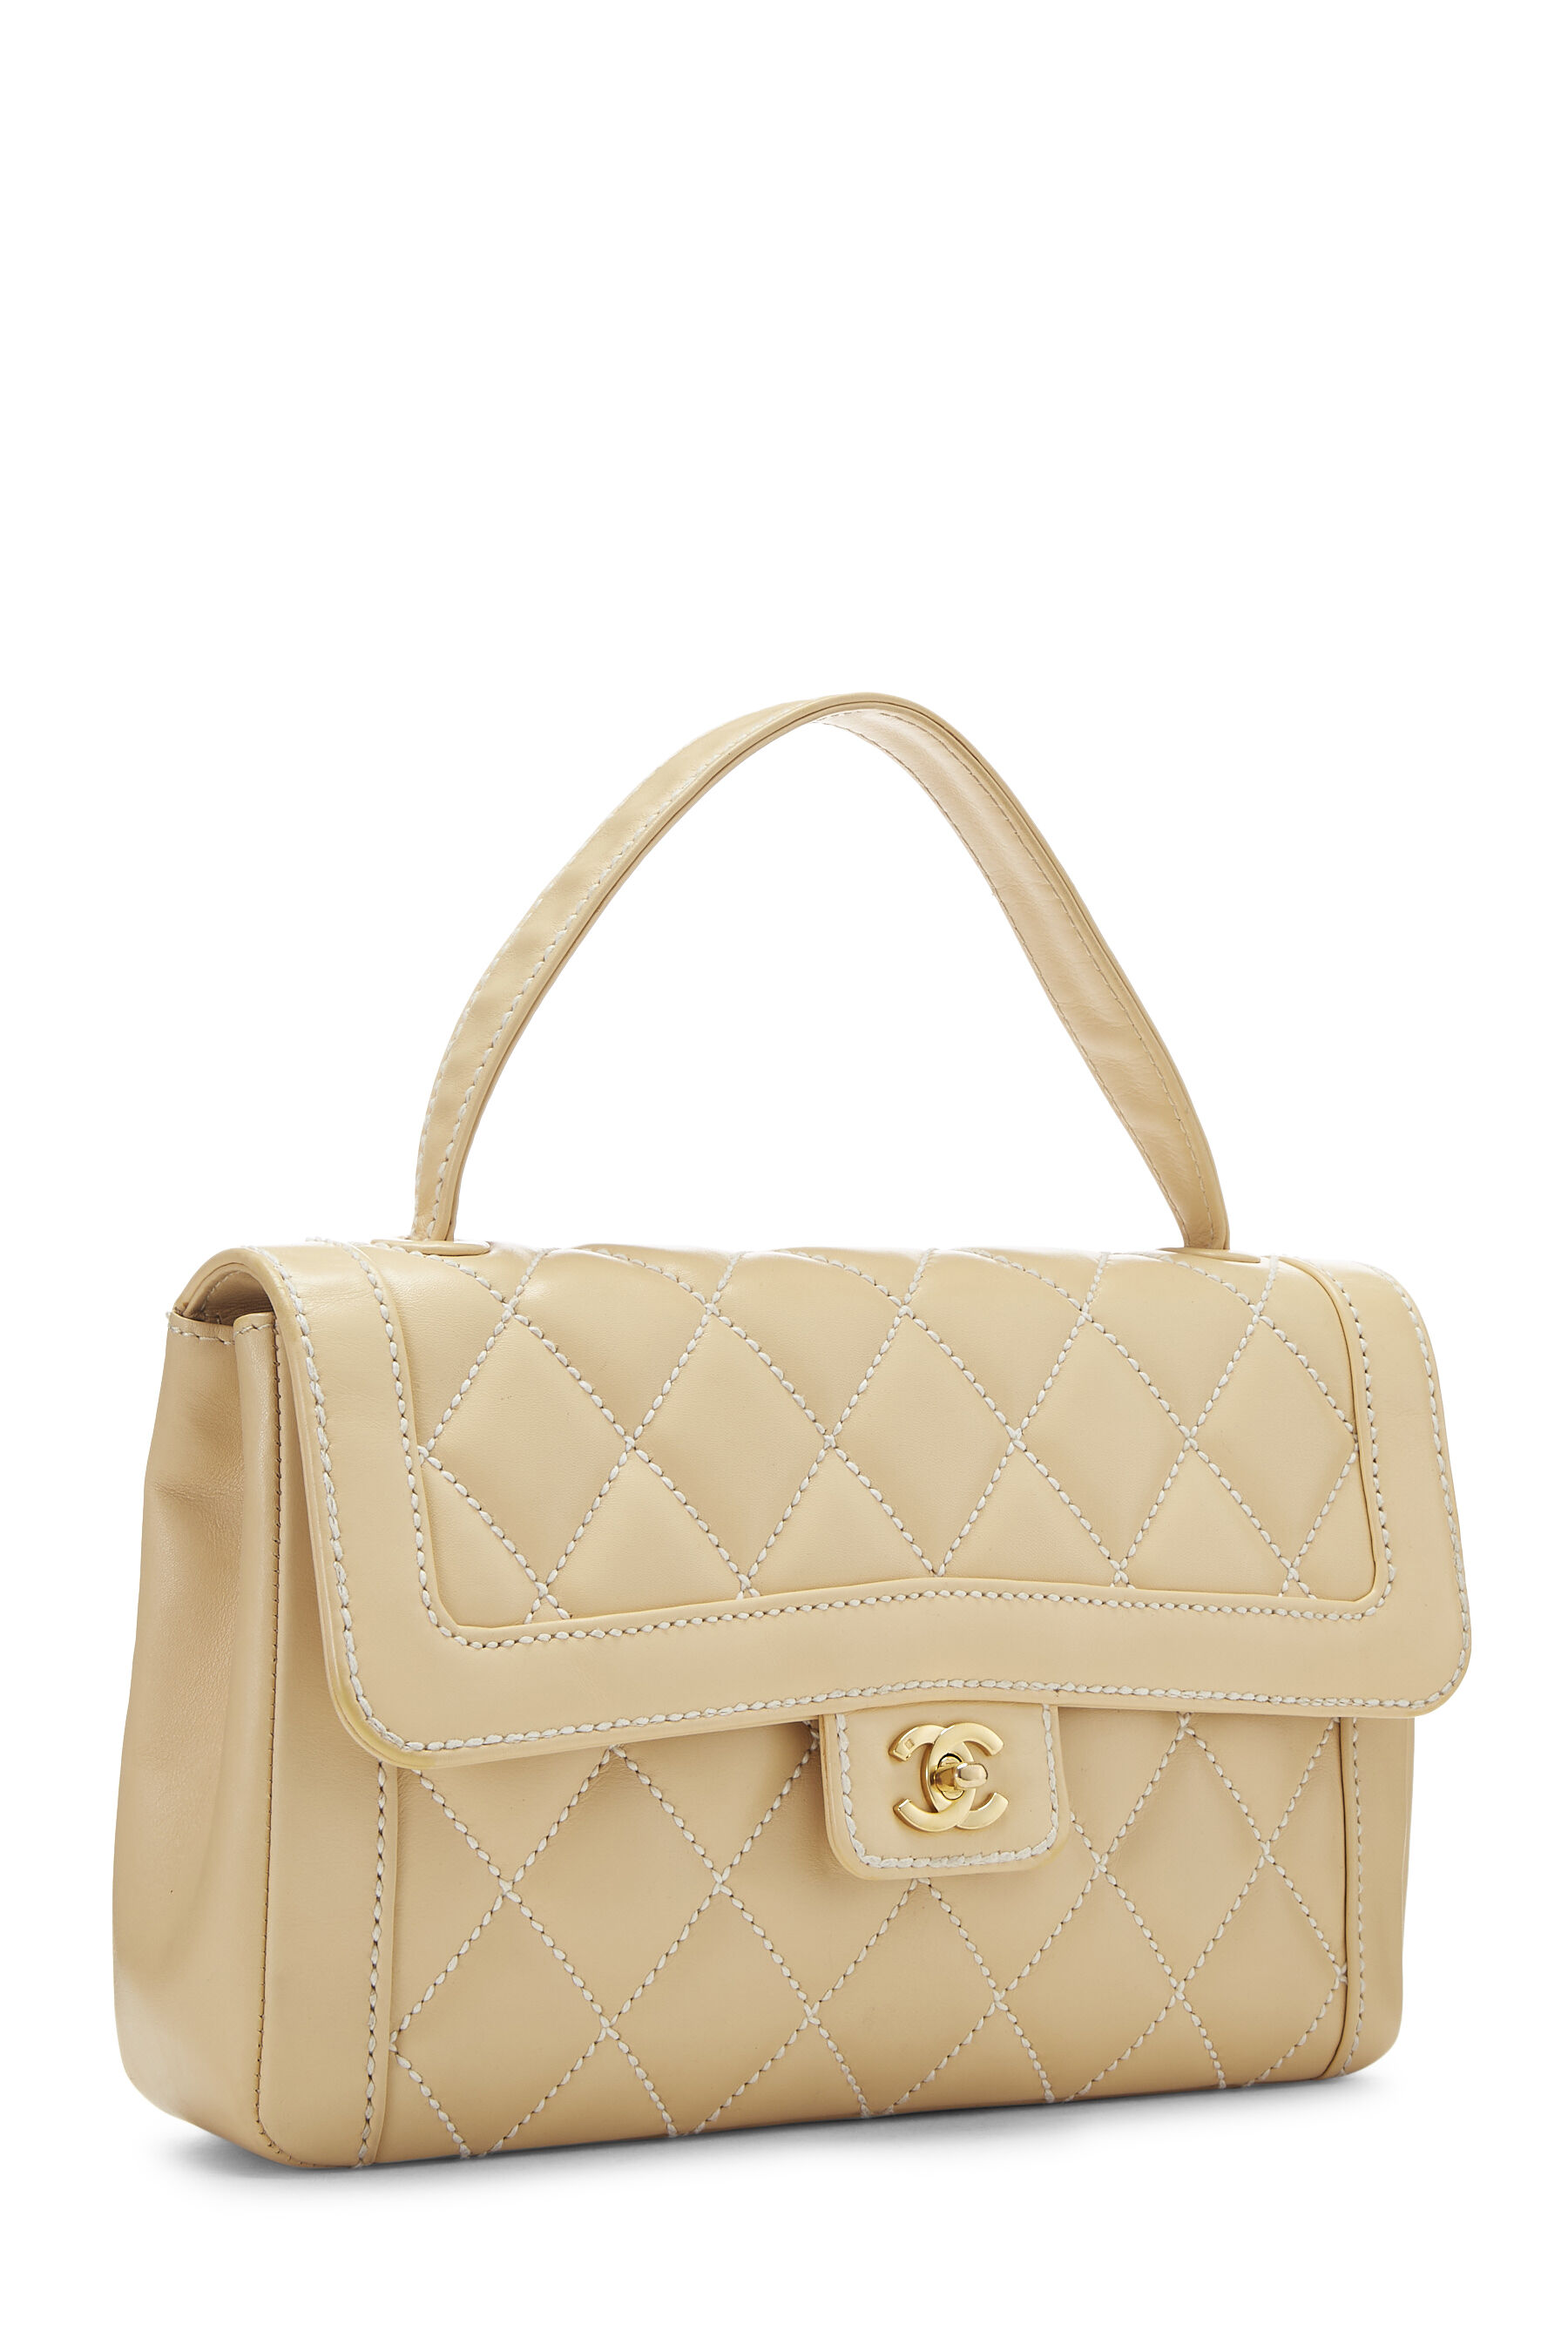 Chanel - Beige Calfskin Wild Stitch Top Handle Bag